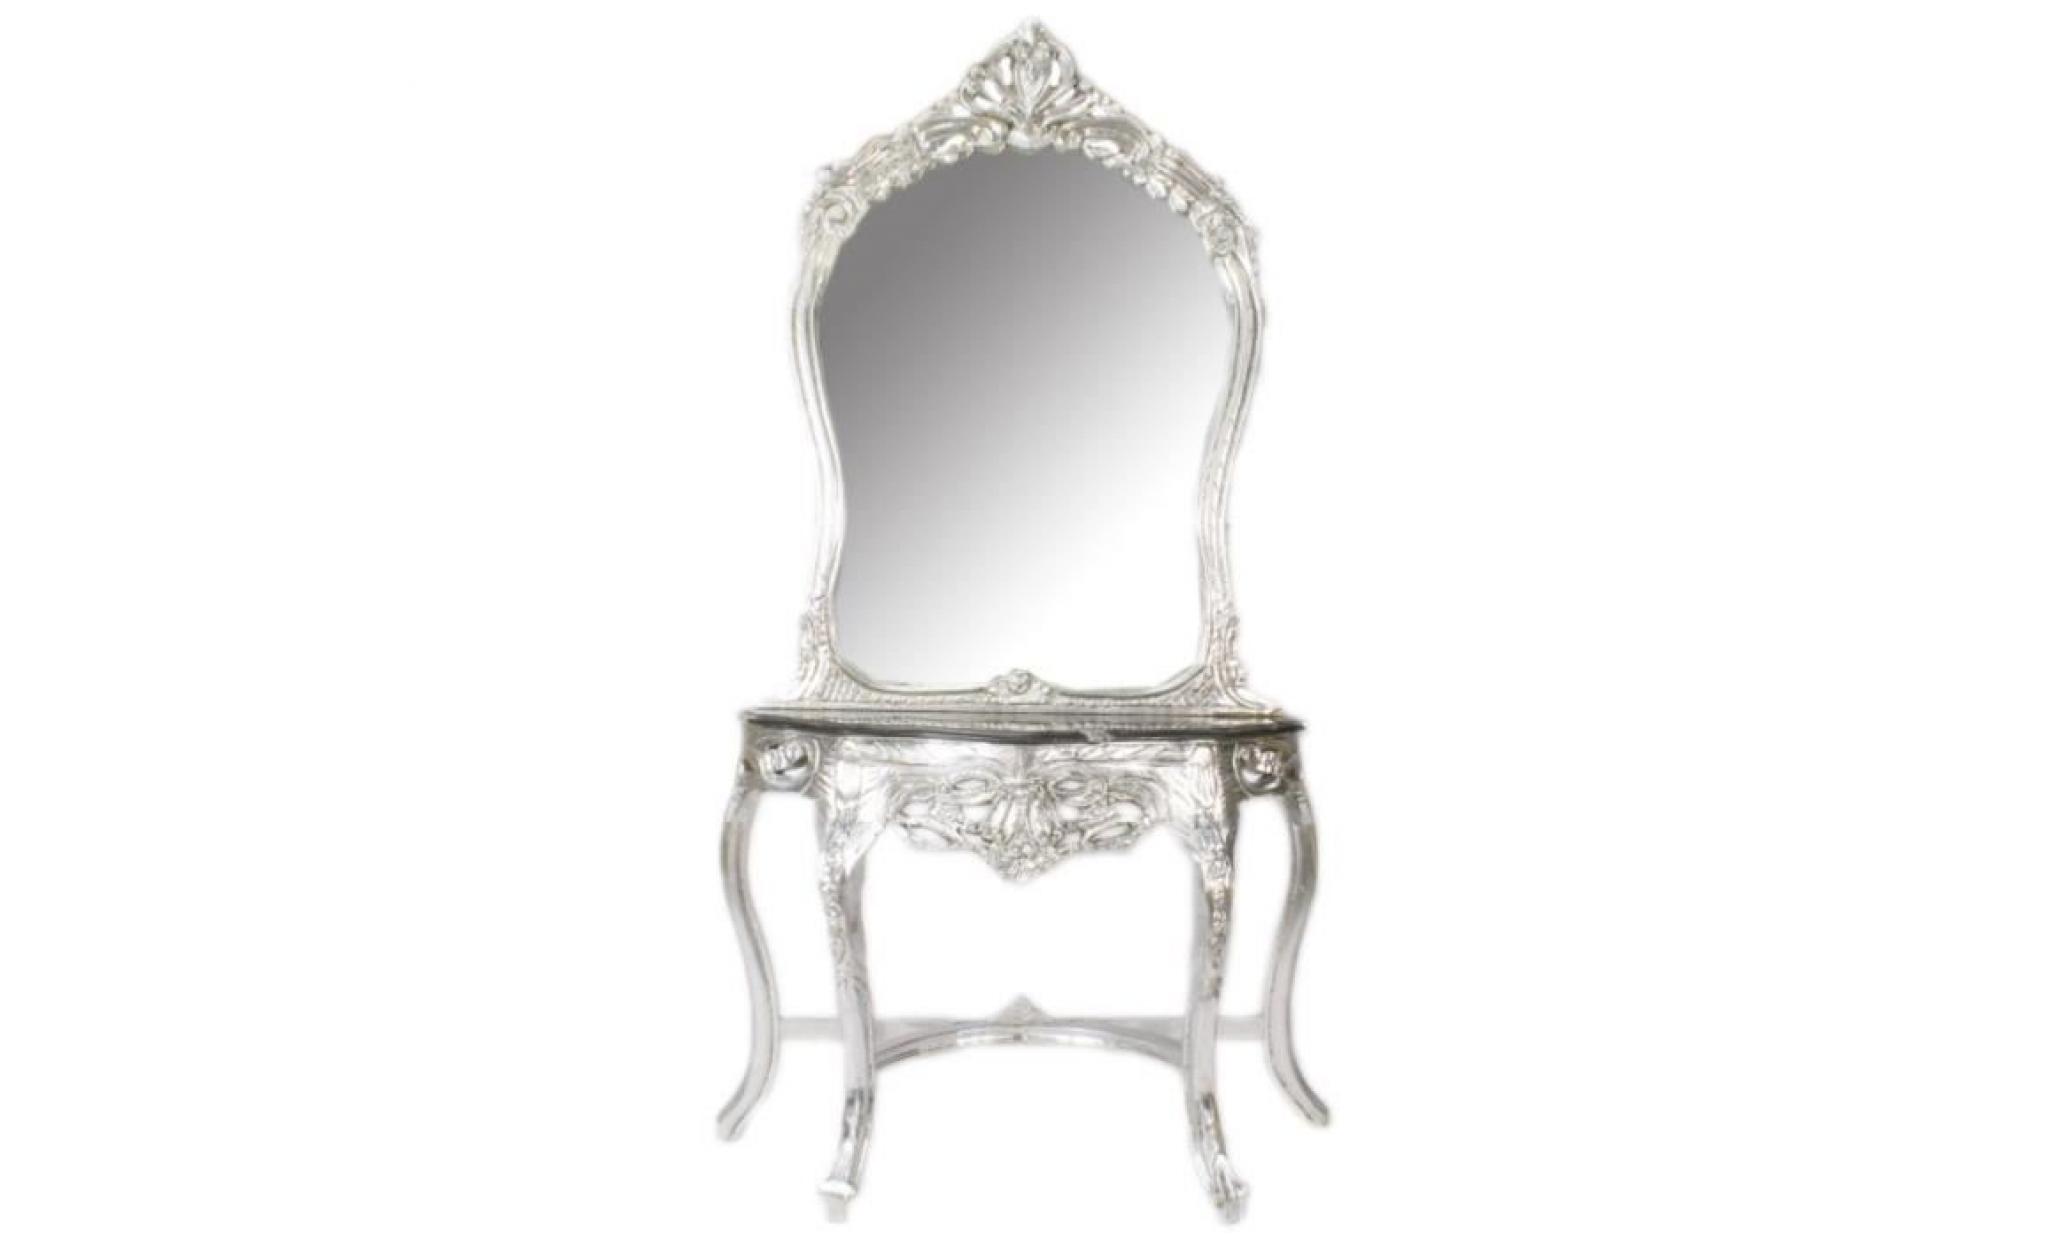 casa padrino baroque mirror console silver / black 95 x 40 x h. 190 cm   baroque style make up console